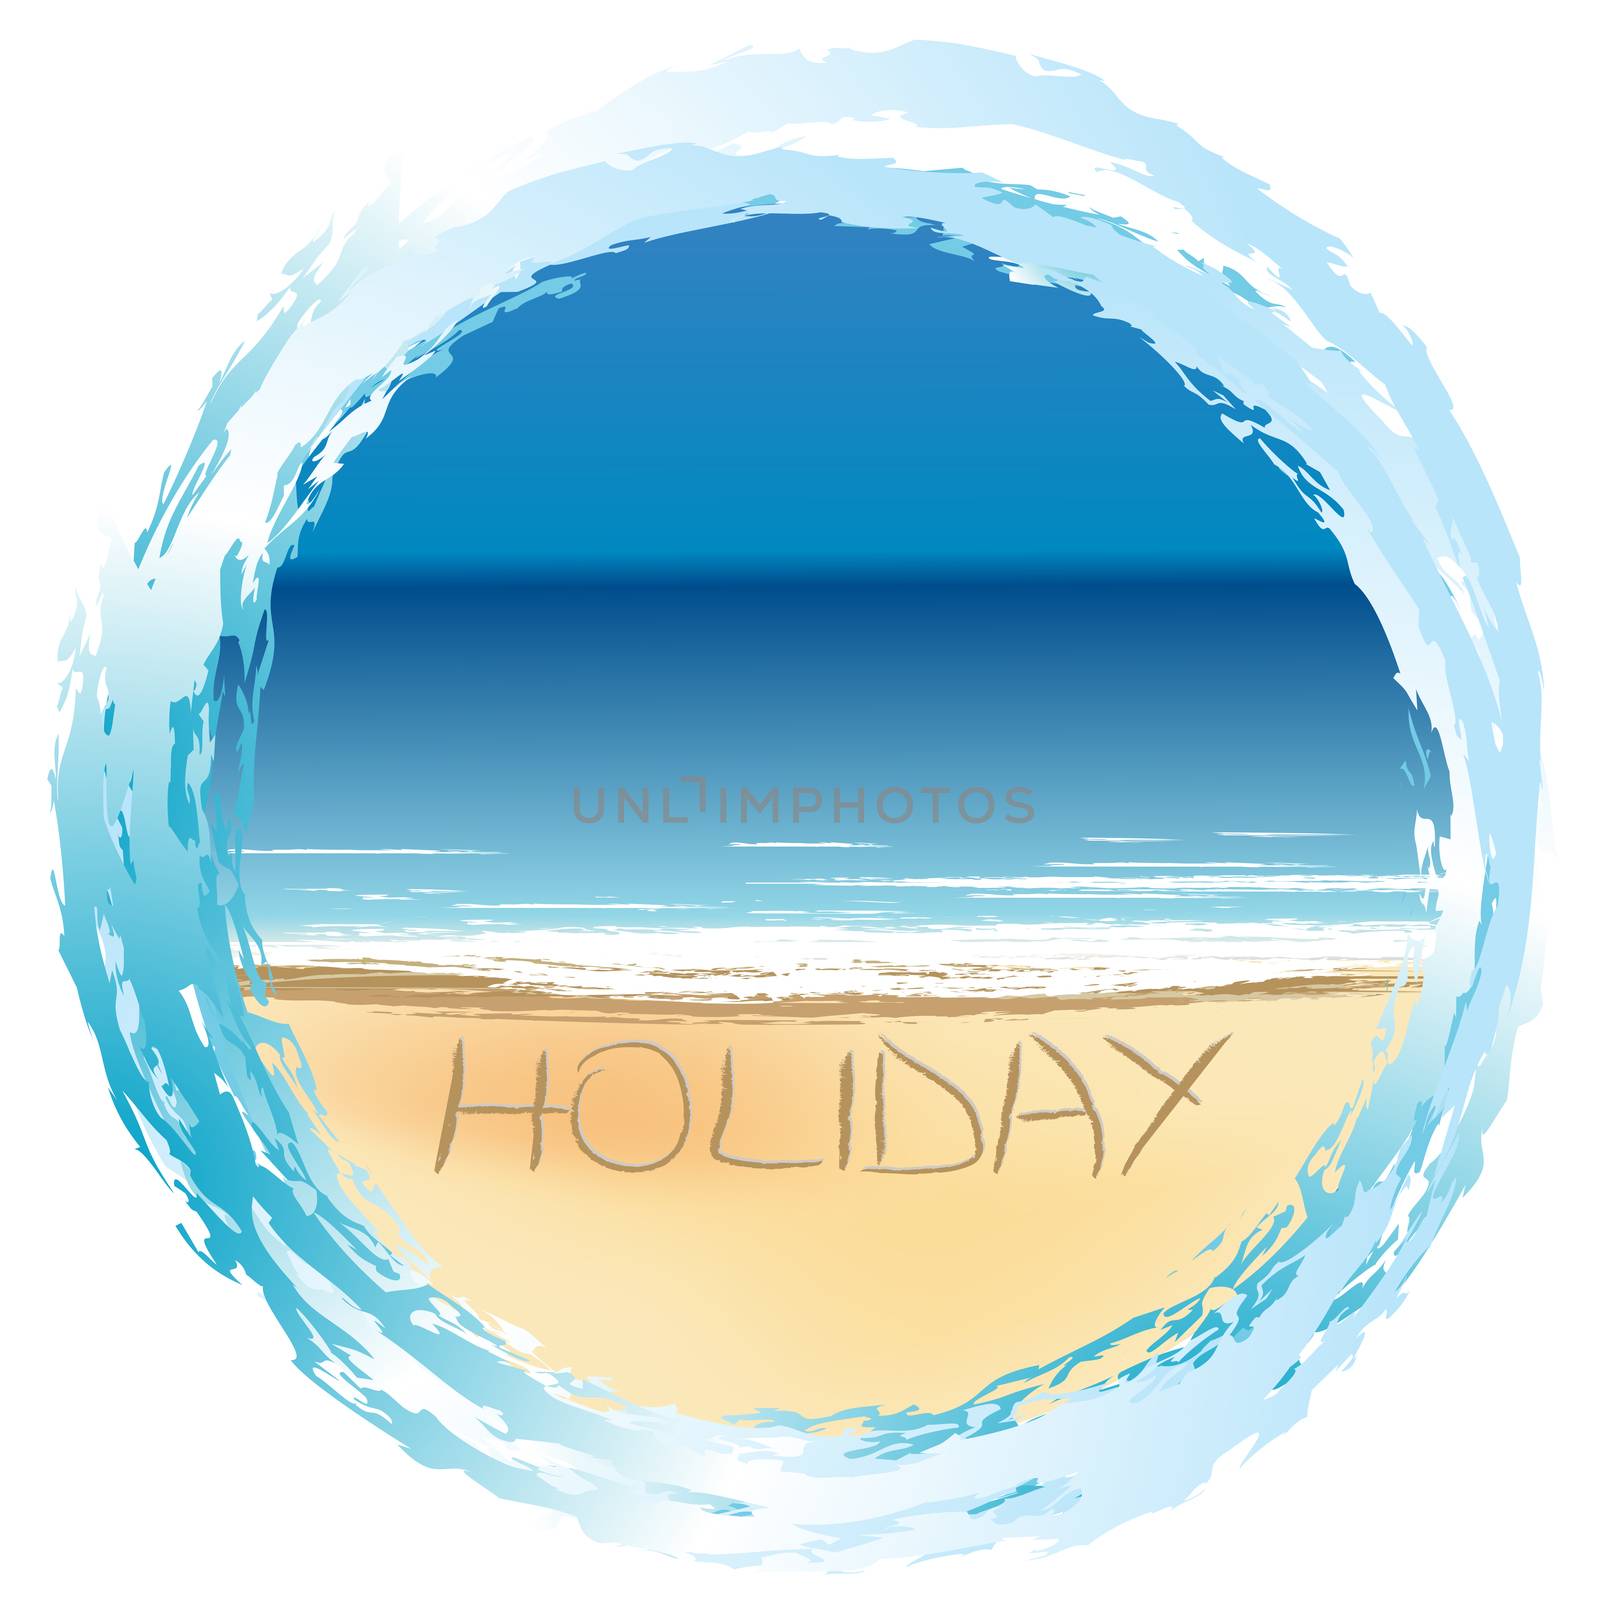 Holiday card with sunny beach